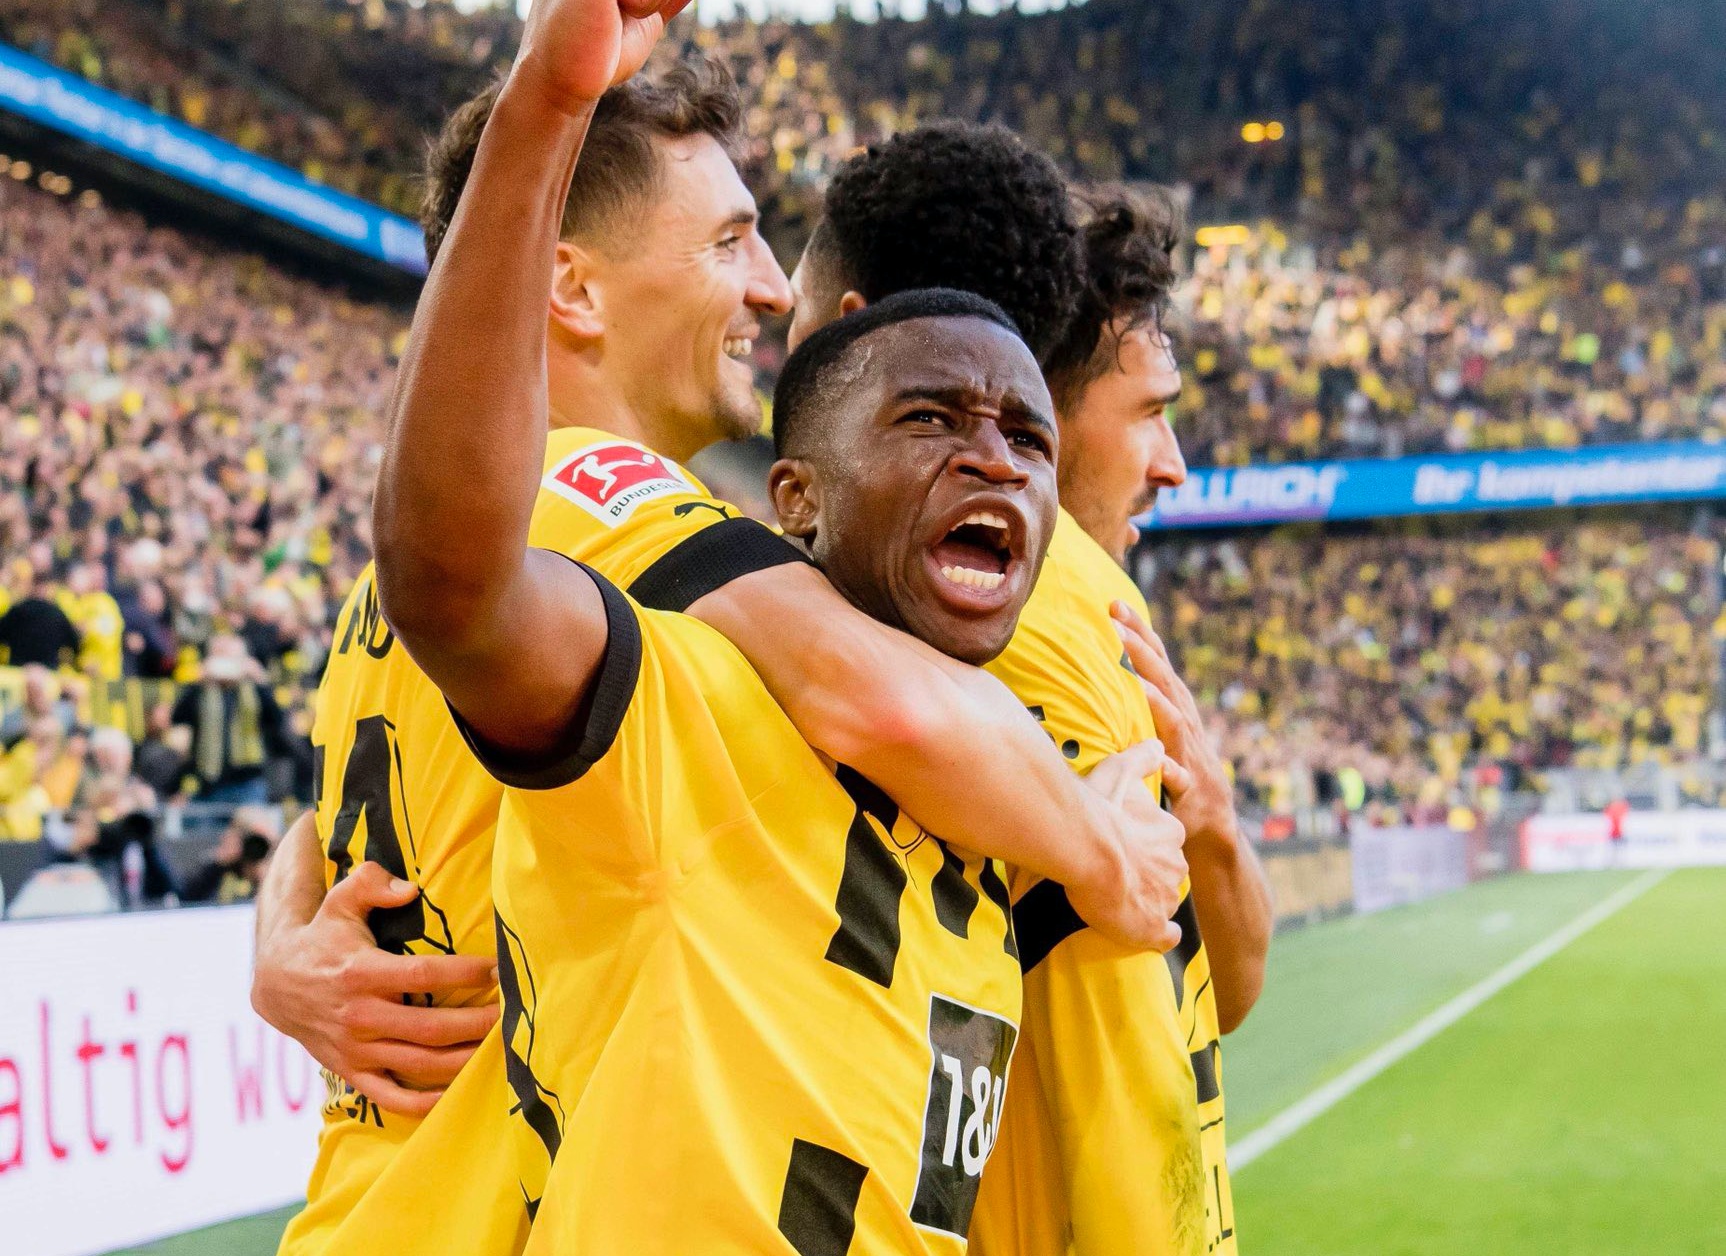 Dortmund lên đầu bảng trong ngày Reus nhận cú sốc - Bóng Đá